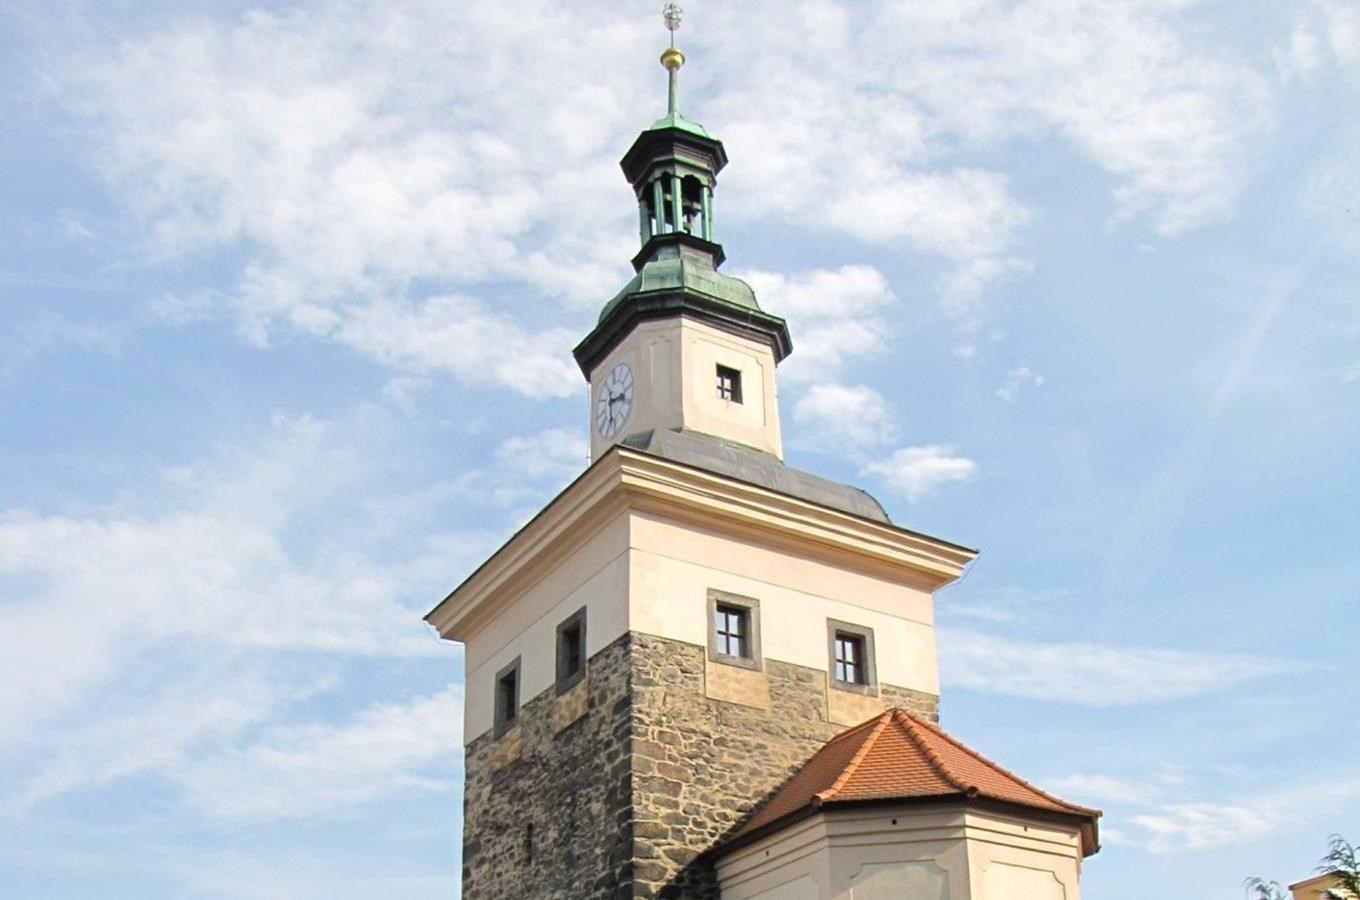 Černá věž v Lokti s expozicí řemesel